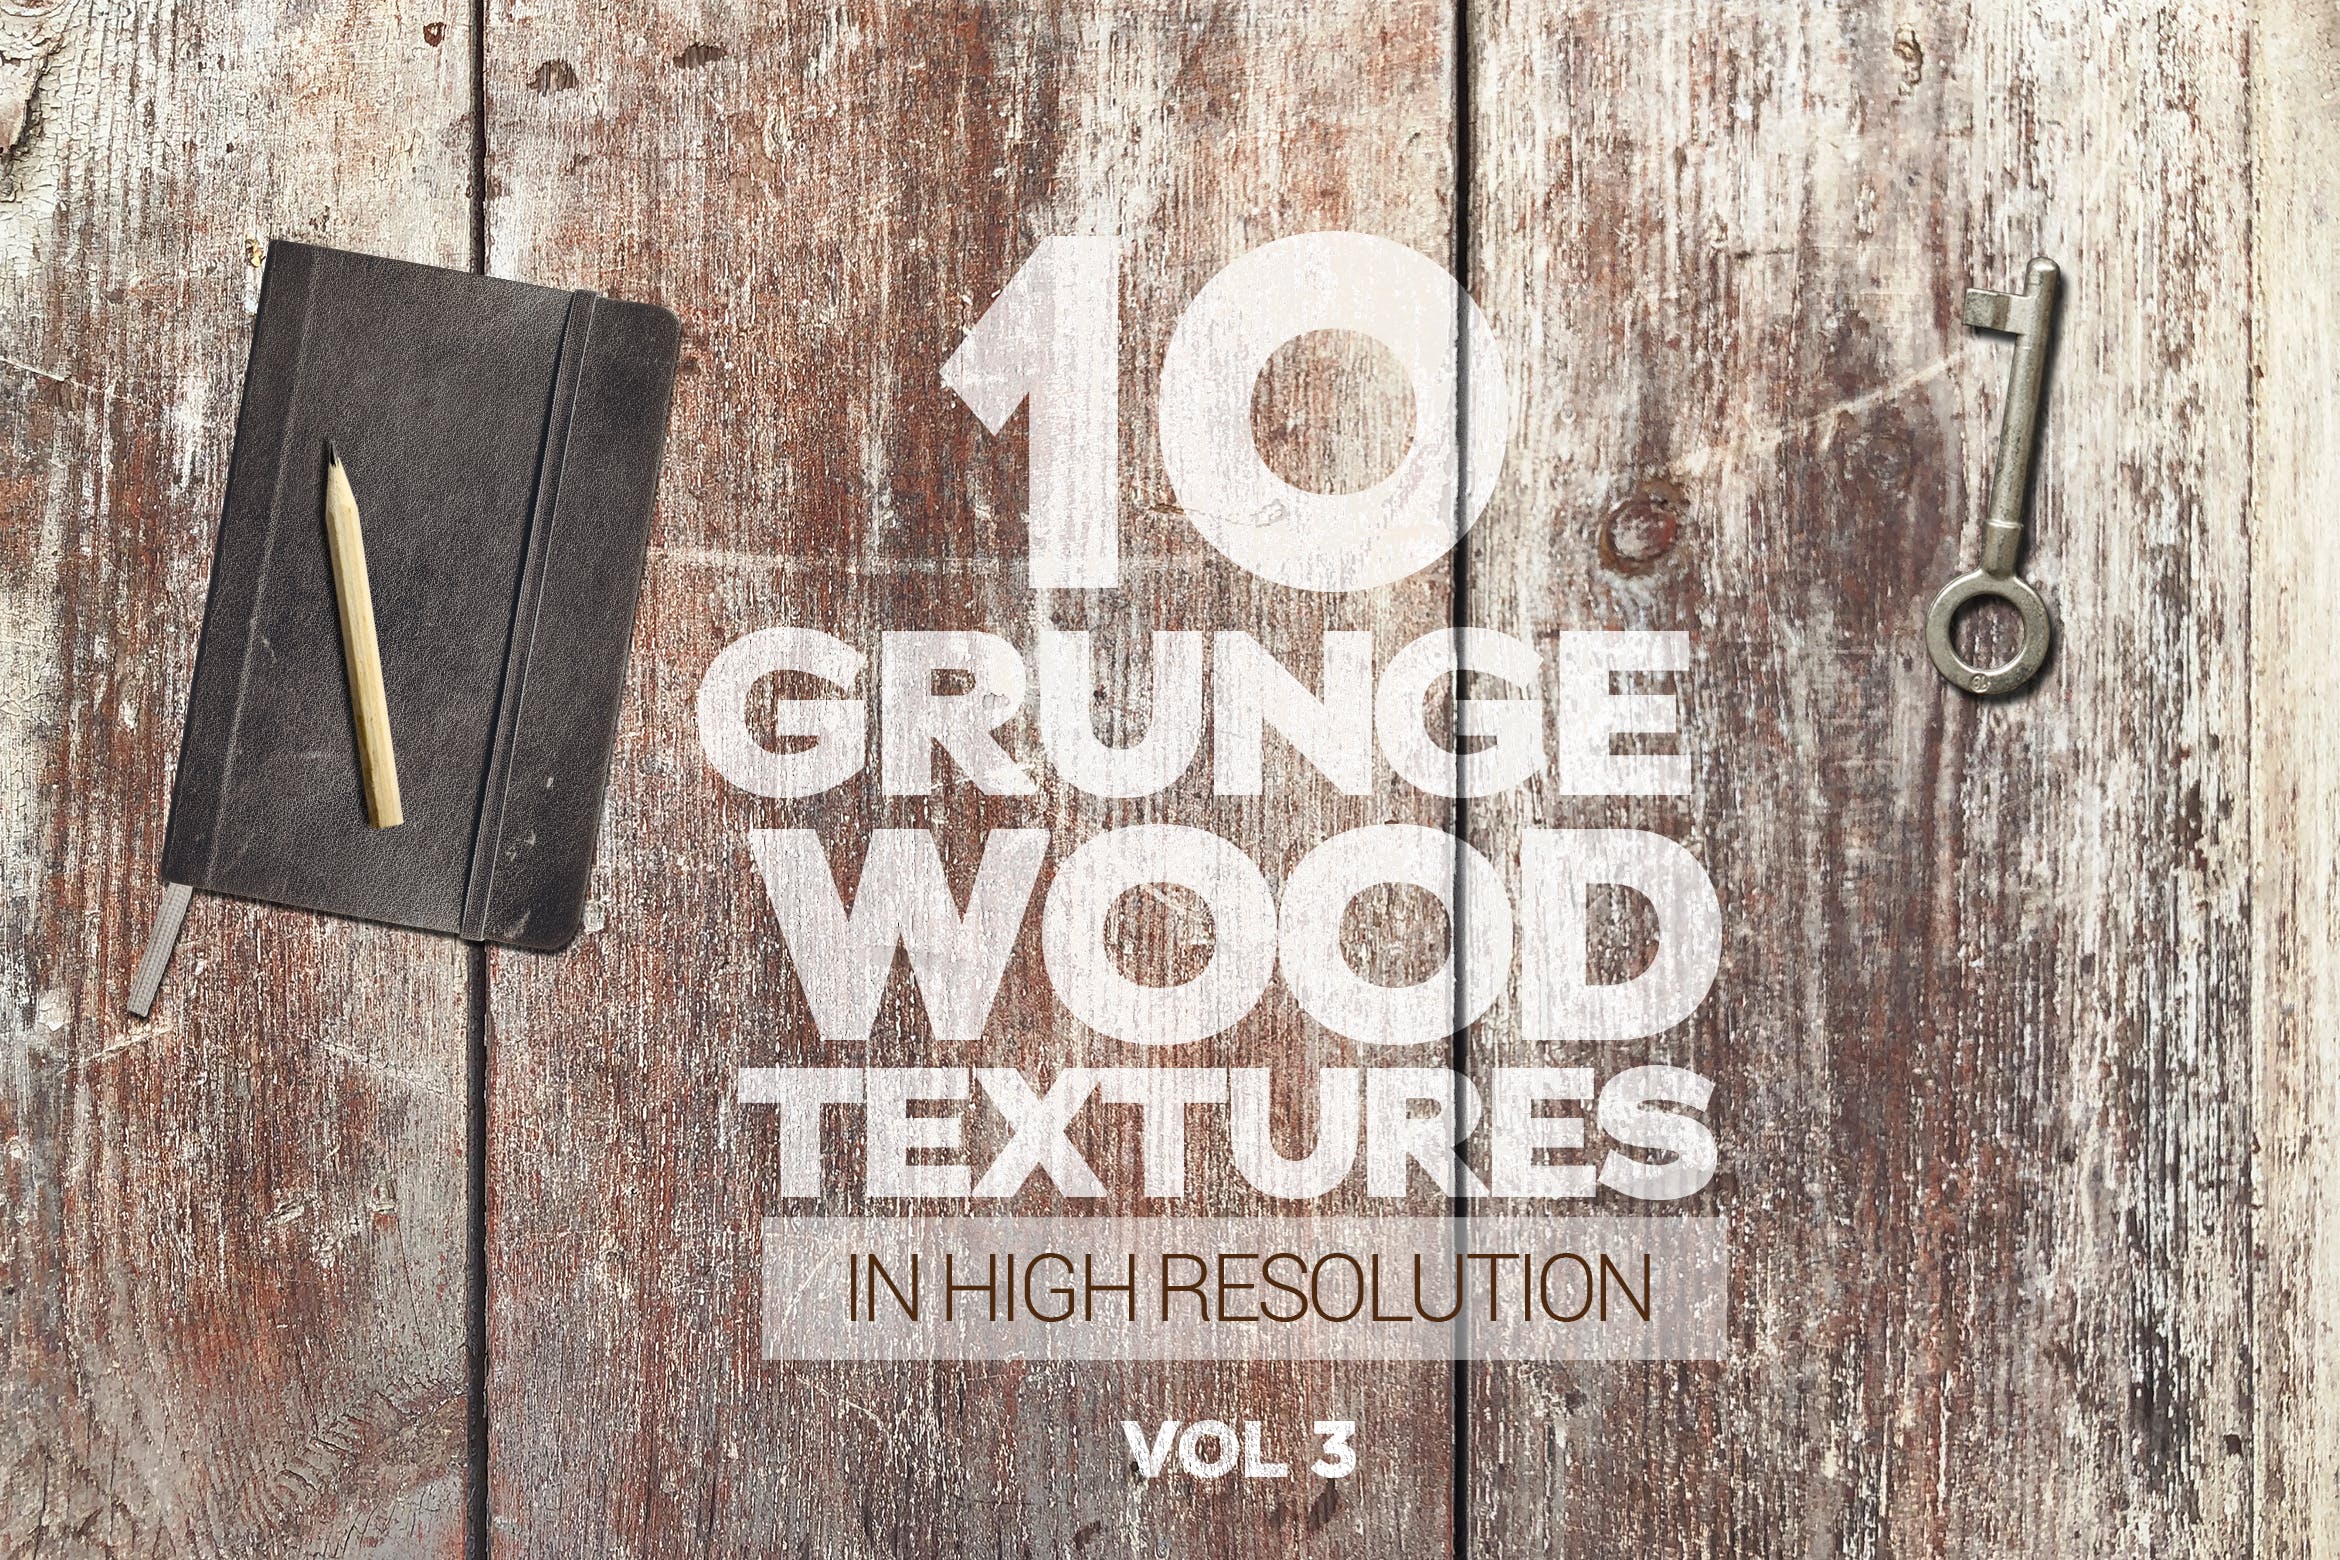 10张古老木地板高清照片图片背景素材v3 Grunge Wood Textures x10 Vol 3插图